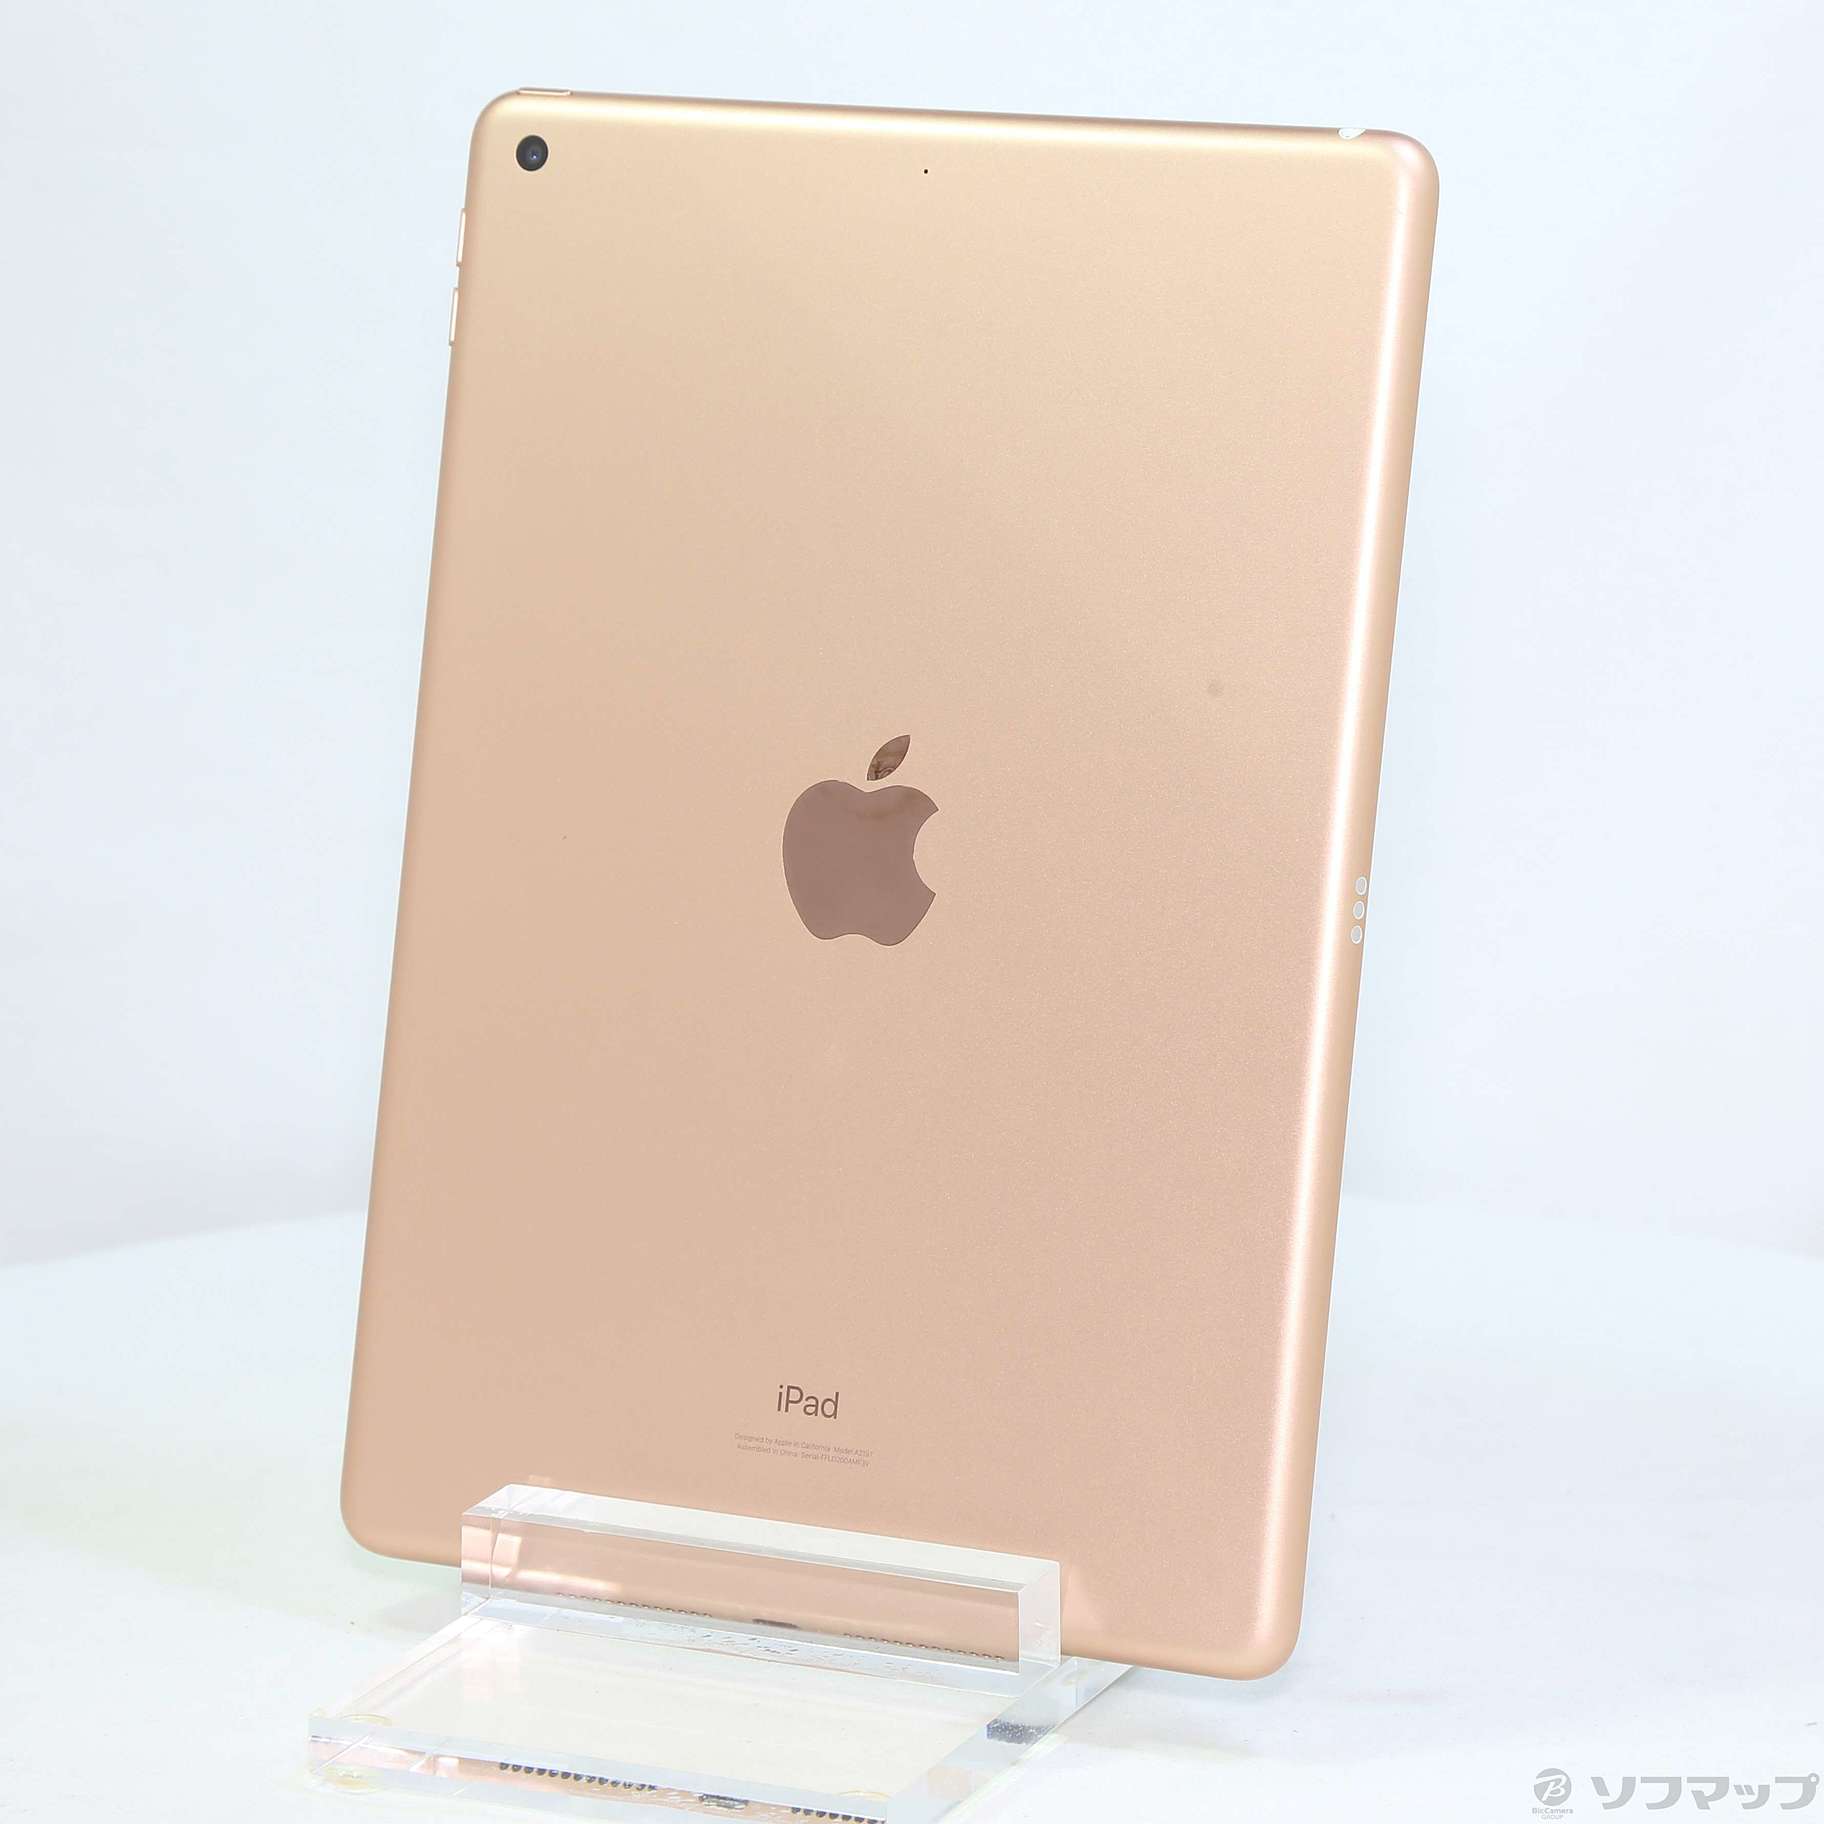 Apple iPad 7世代 Wi-Fi 128GB gold FW792J/A - www.sorbillomenu.com